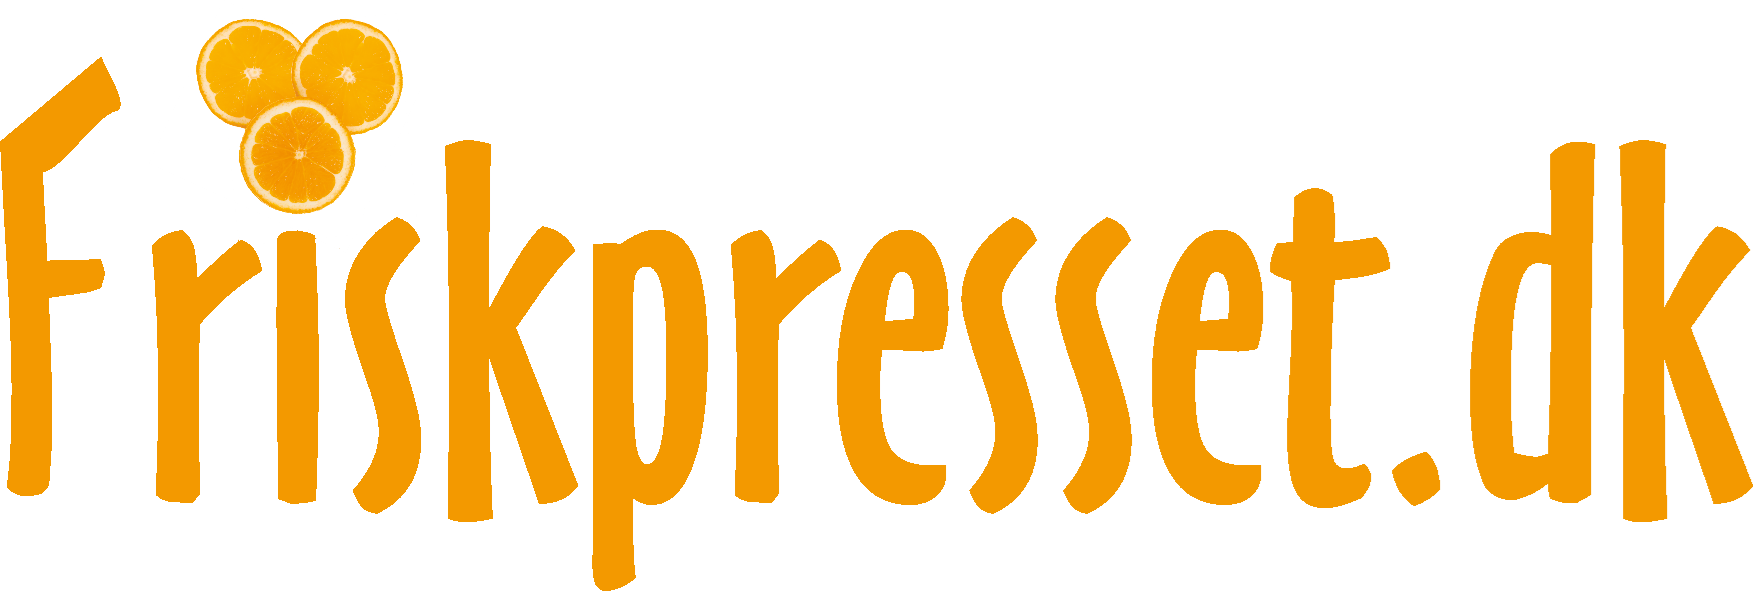 friskpresset logo m app fritlagt orange